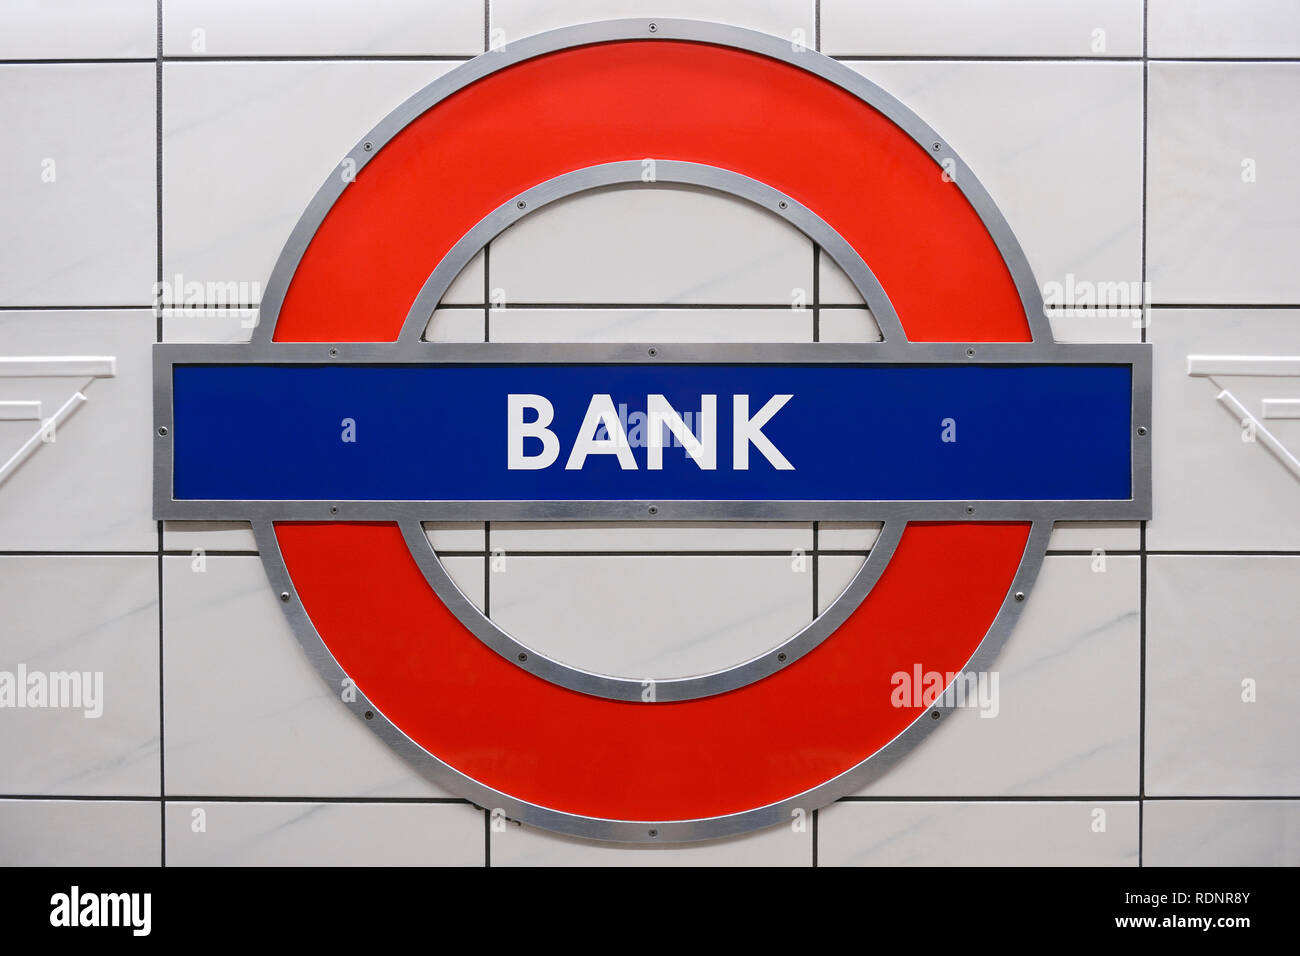 Stazione della metropolitana di Bank segno, London, Regno Unito Foto Stock